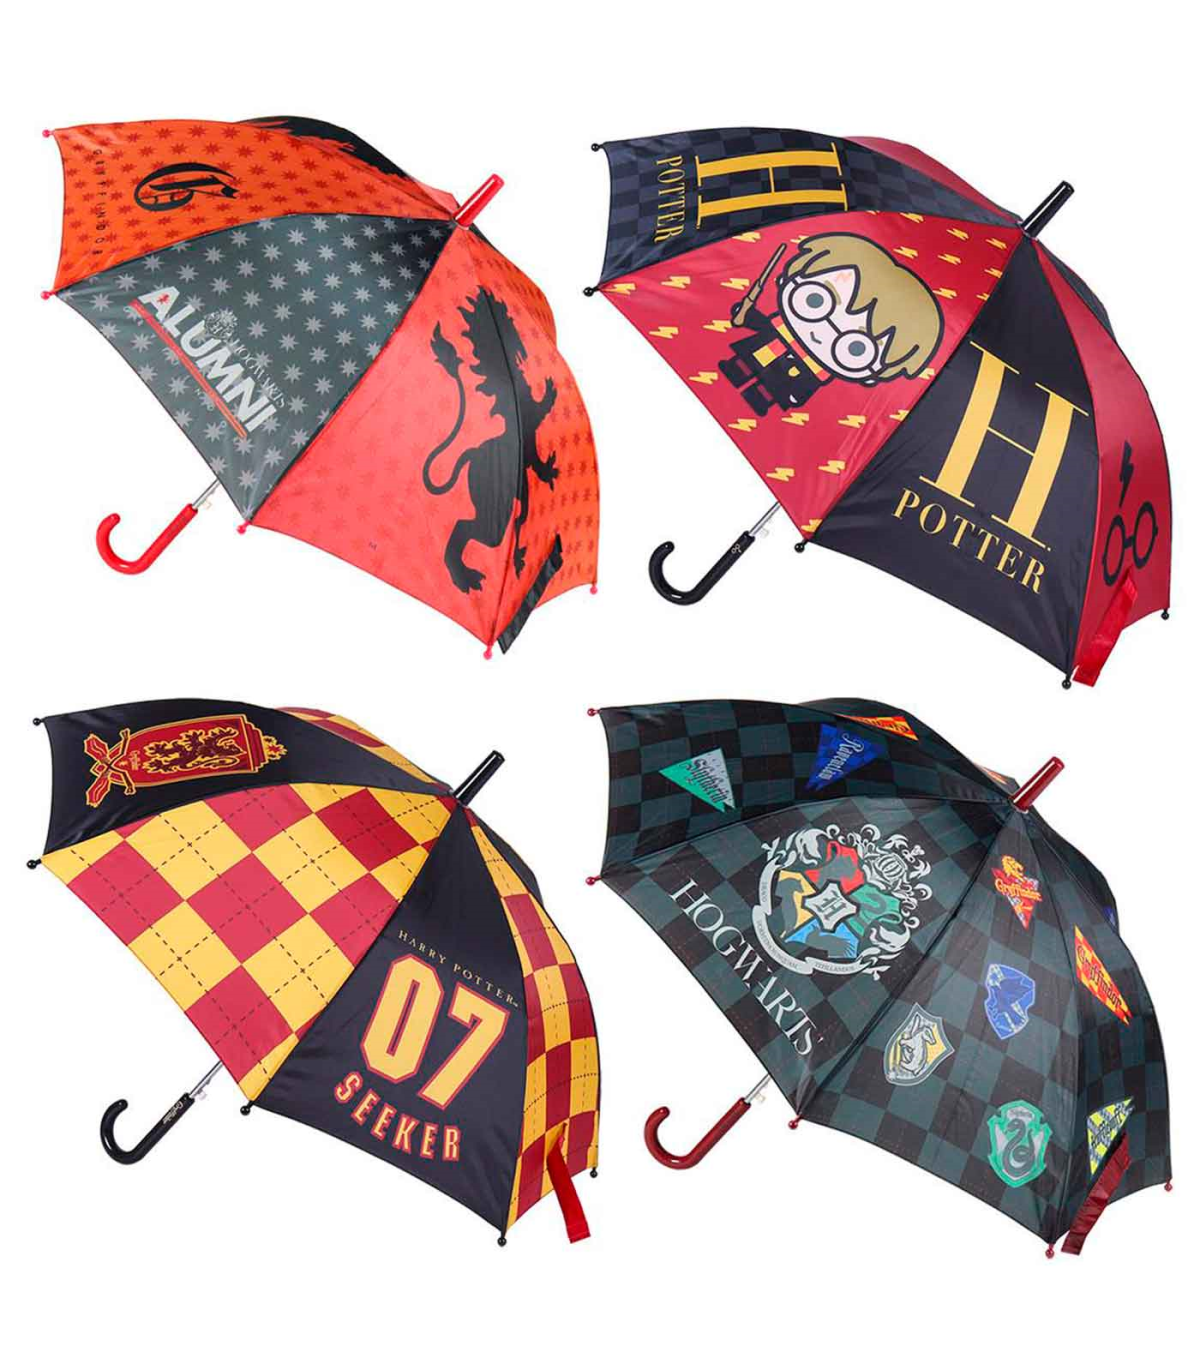 - Paraguas de Harry Potter Especial para niños - Trasparente y con diseños, de 8 varillas - Medidas 64 x 8 cm - Mode